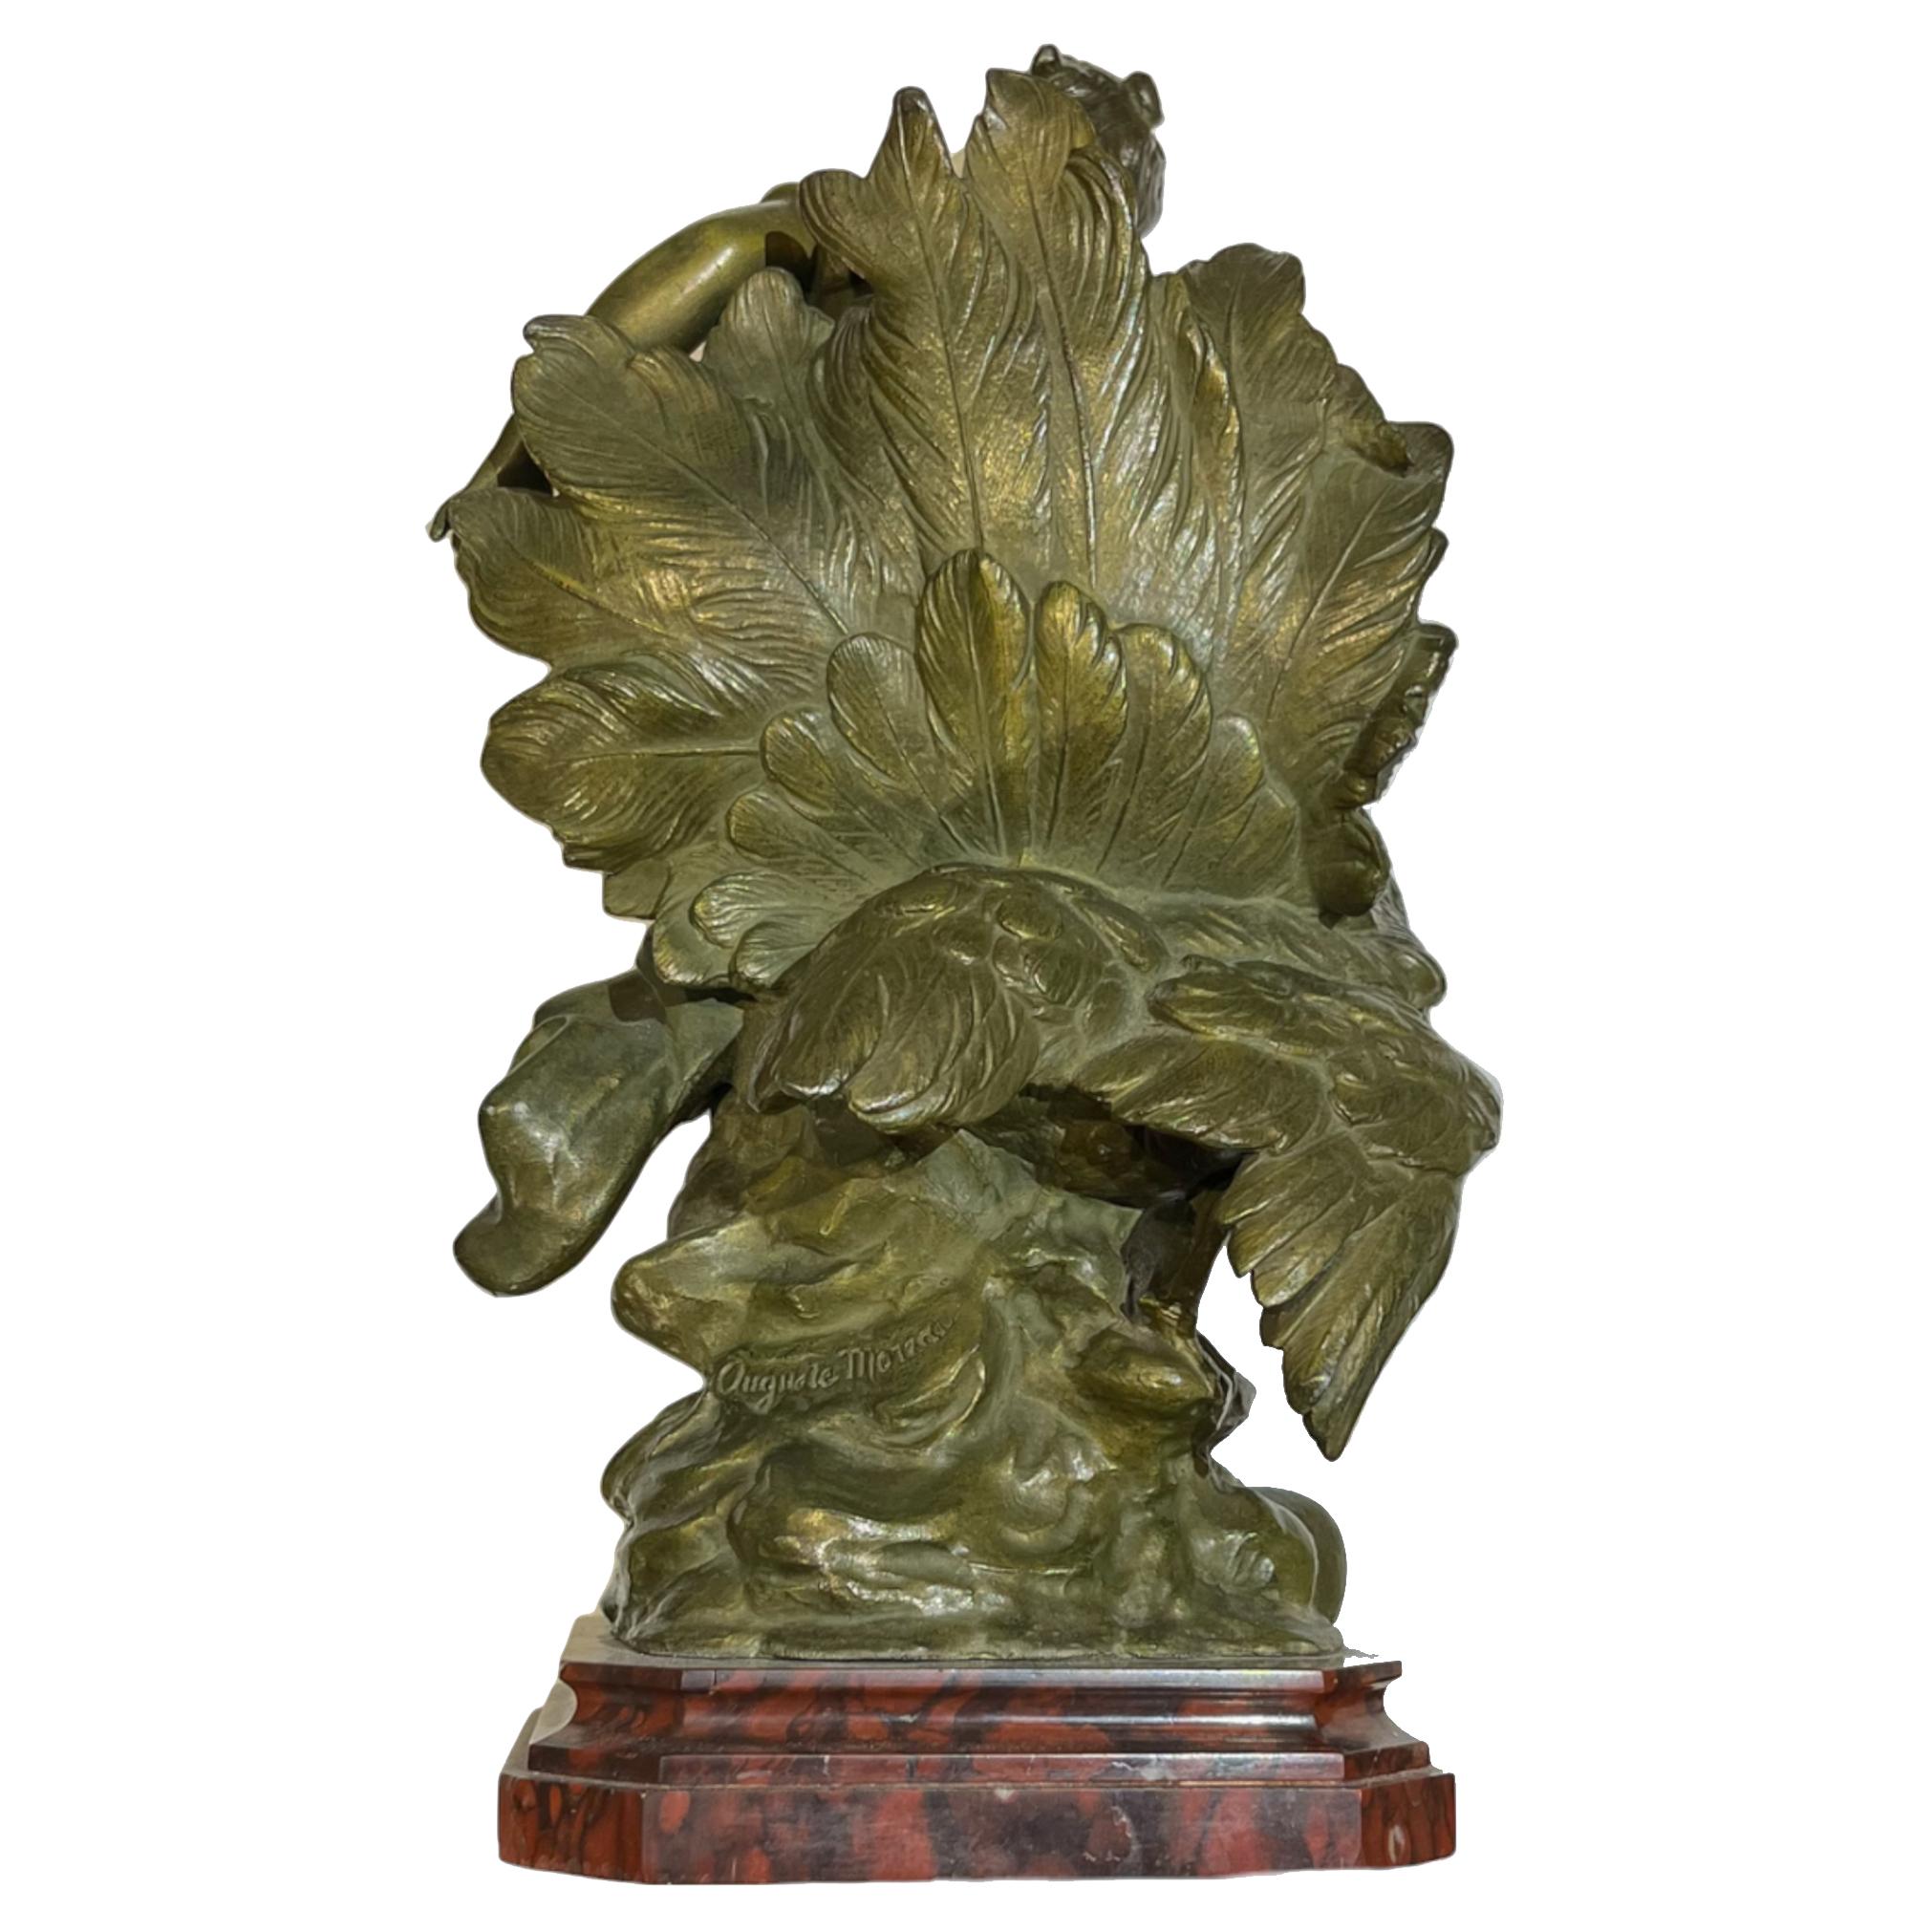 Feine französische patinierte Bronzefigur eines jungen Mädchens, das neben einem Pfau sitzt, überragt von einem Sockel aus rotem Marmor von Auguste Moreau.

Perfekte Größe für einen Schreibtisch oder eine Kommode, oder als Verzierung für den